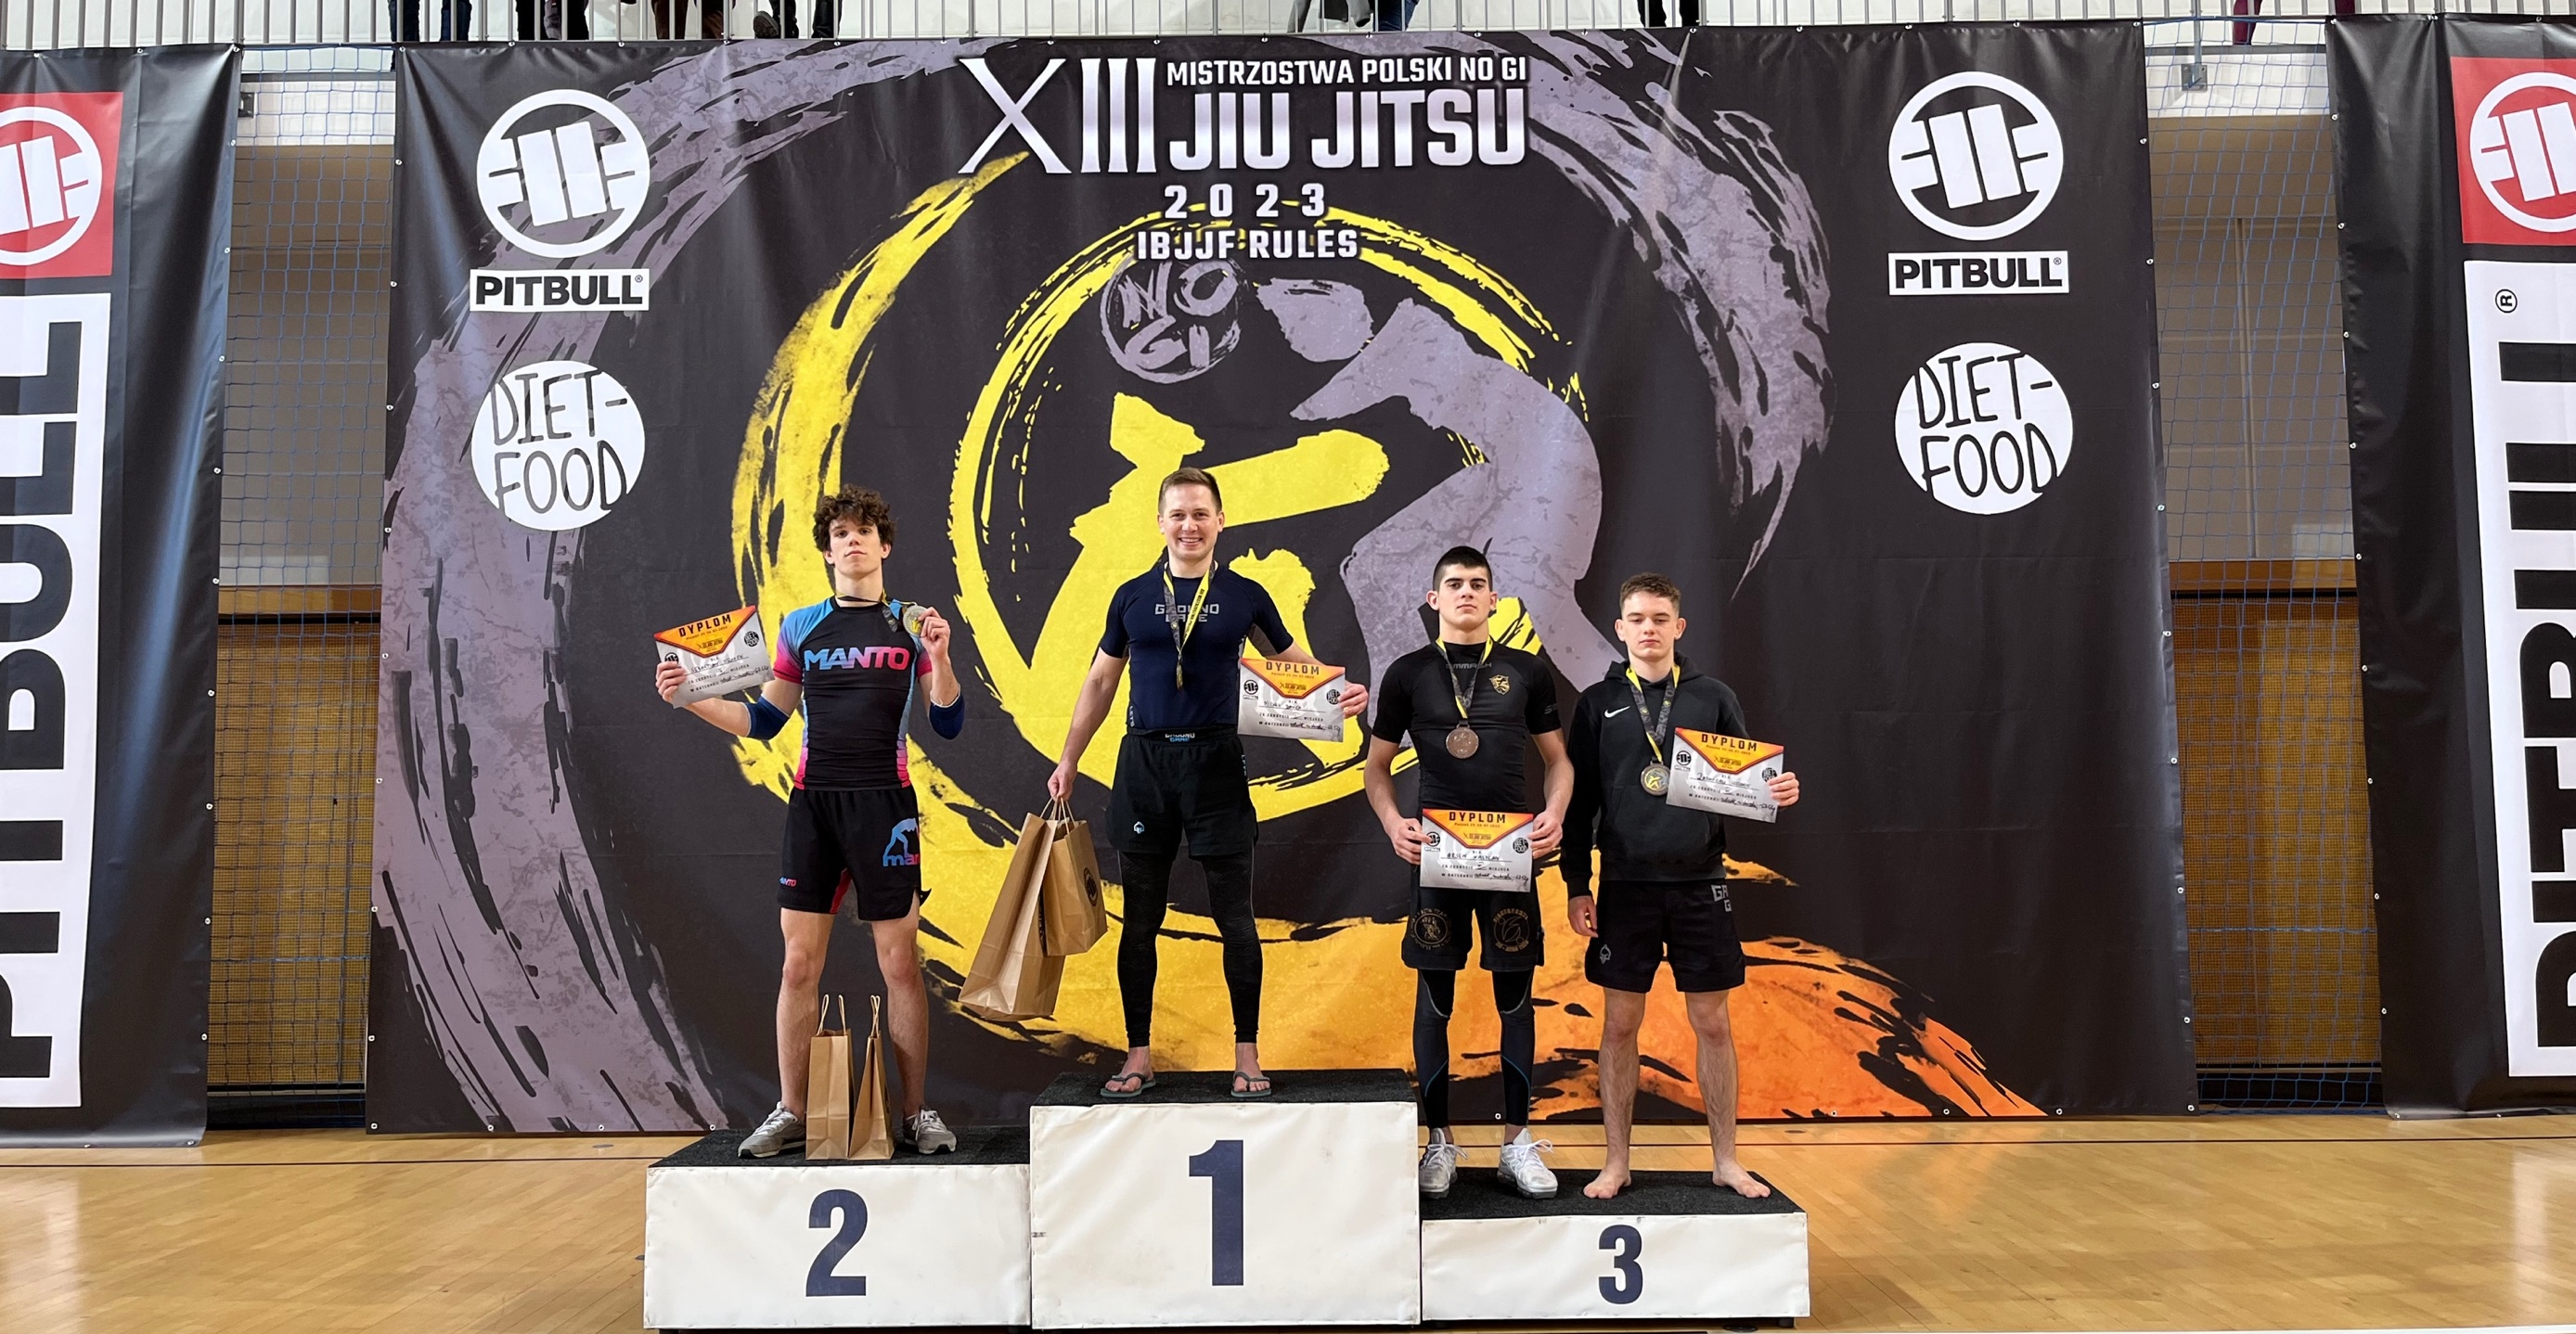 Sukces ucznia Zielonki w Mistrzostwach Polski w Jiu Jitsu